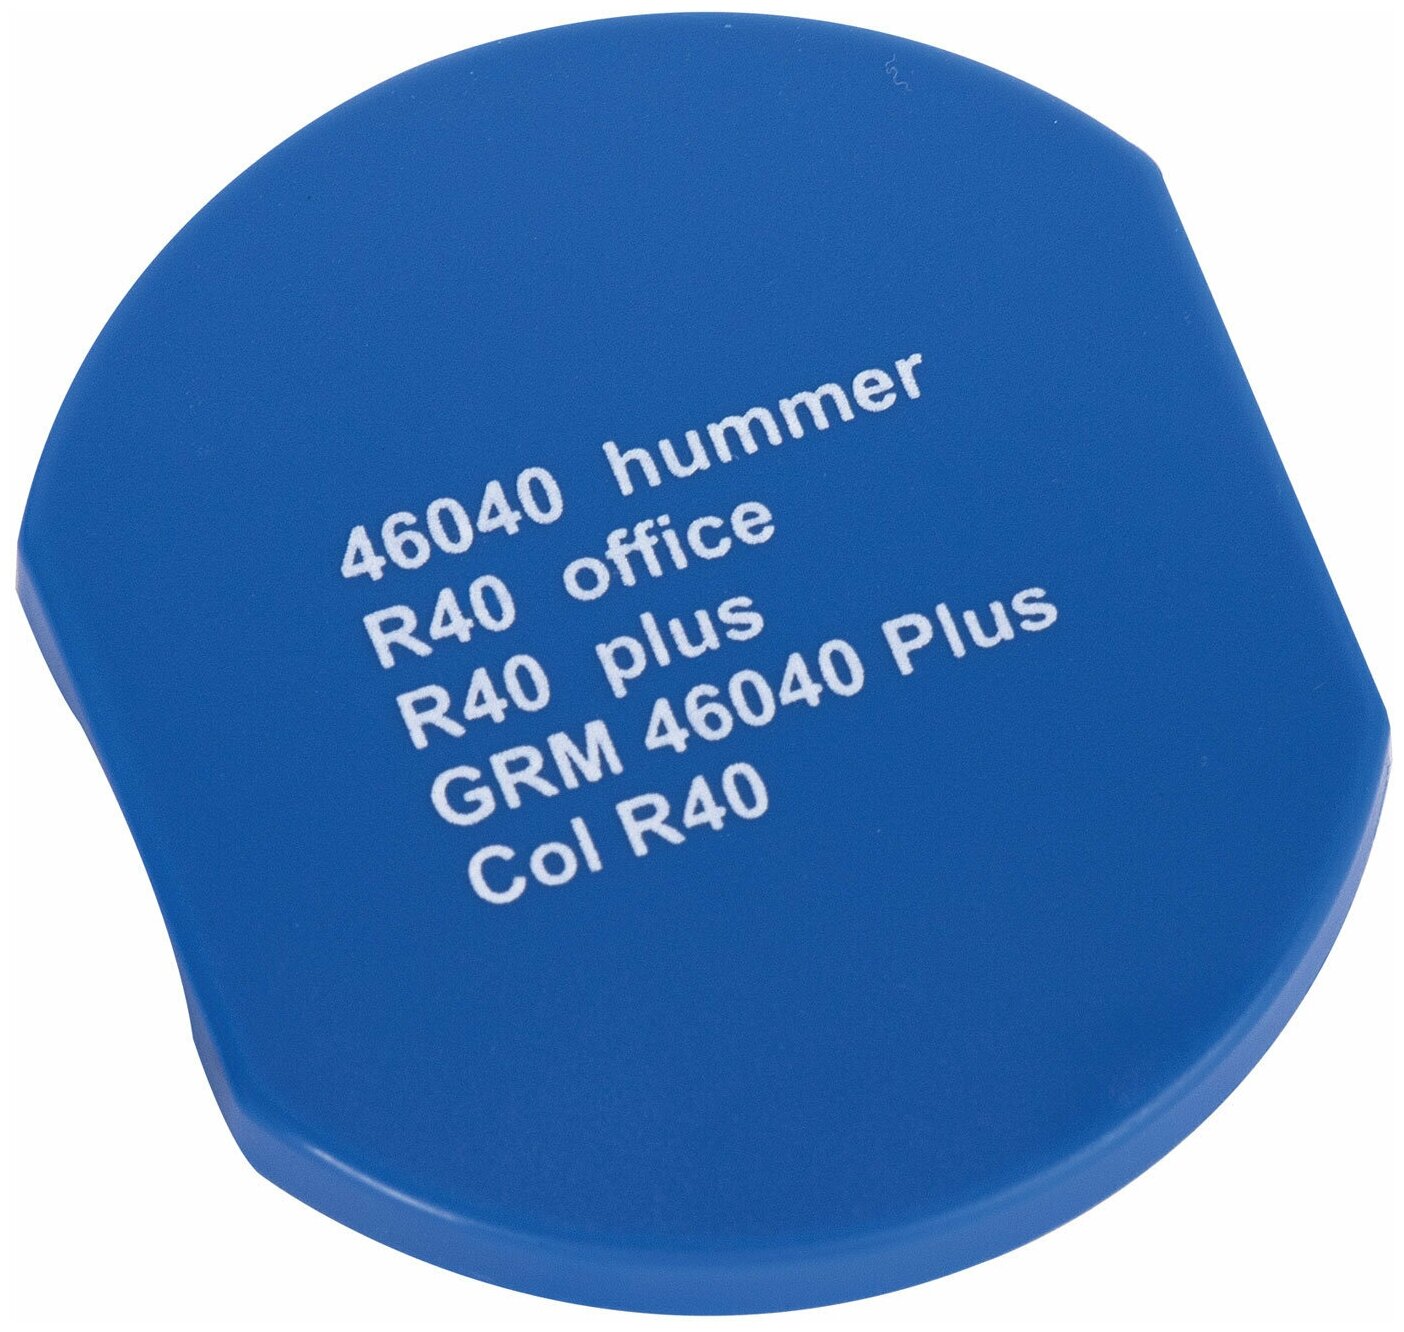 Подушка сменная диаметр 40 мм, фиолетовая, для GRM R40Plus, 46040, Hummer, Colop Printer R40, 171100100